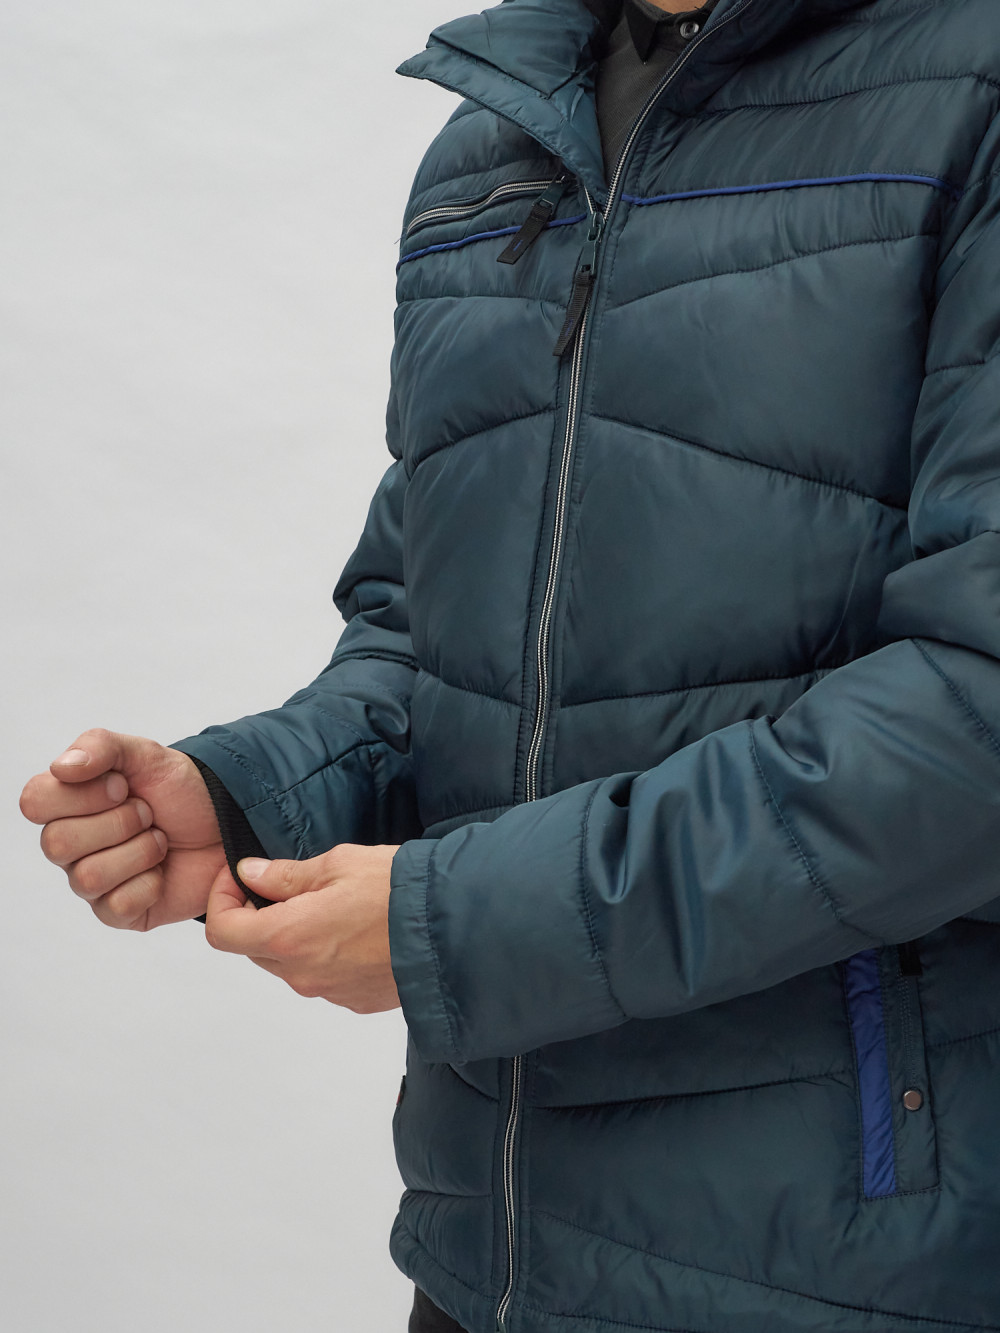 Купить куртку мужскую спортивную весеннюю оптом от производителя недорого в Москве 62188TS 1